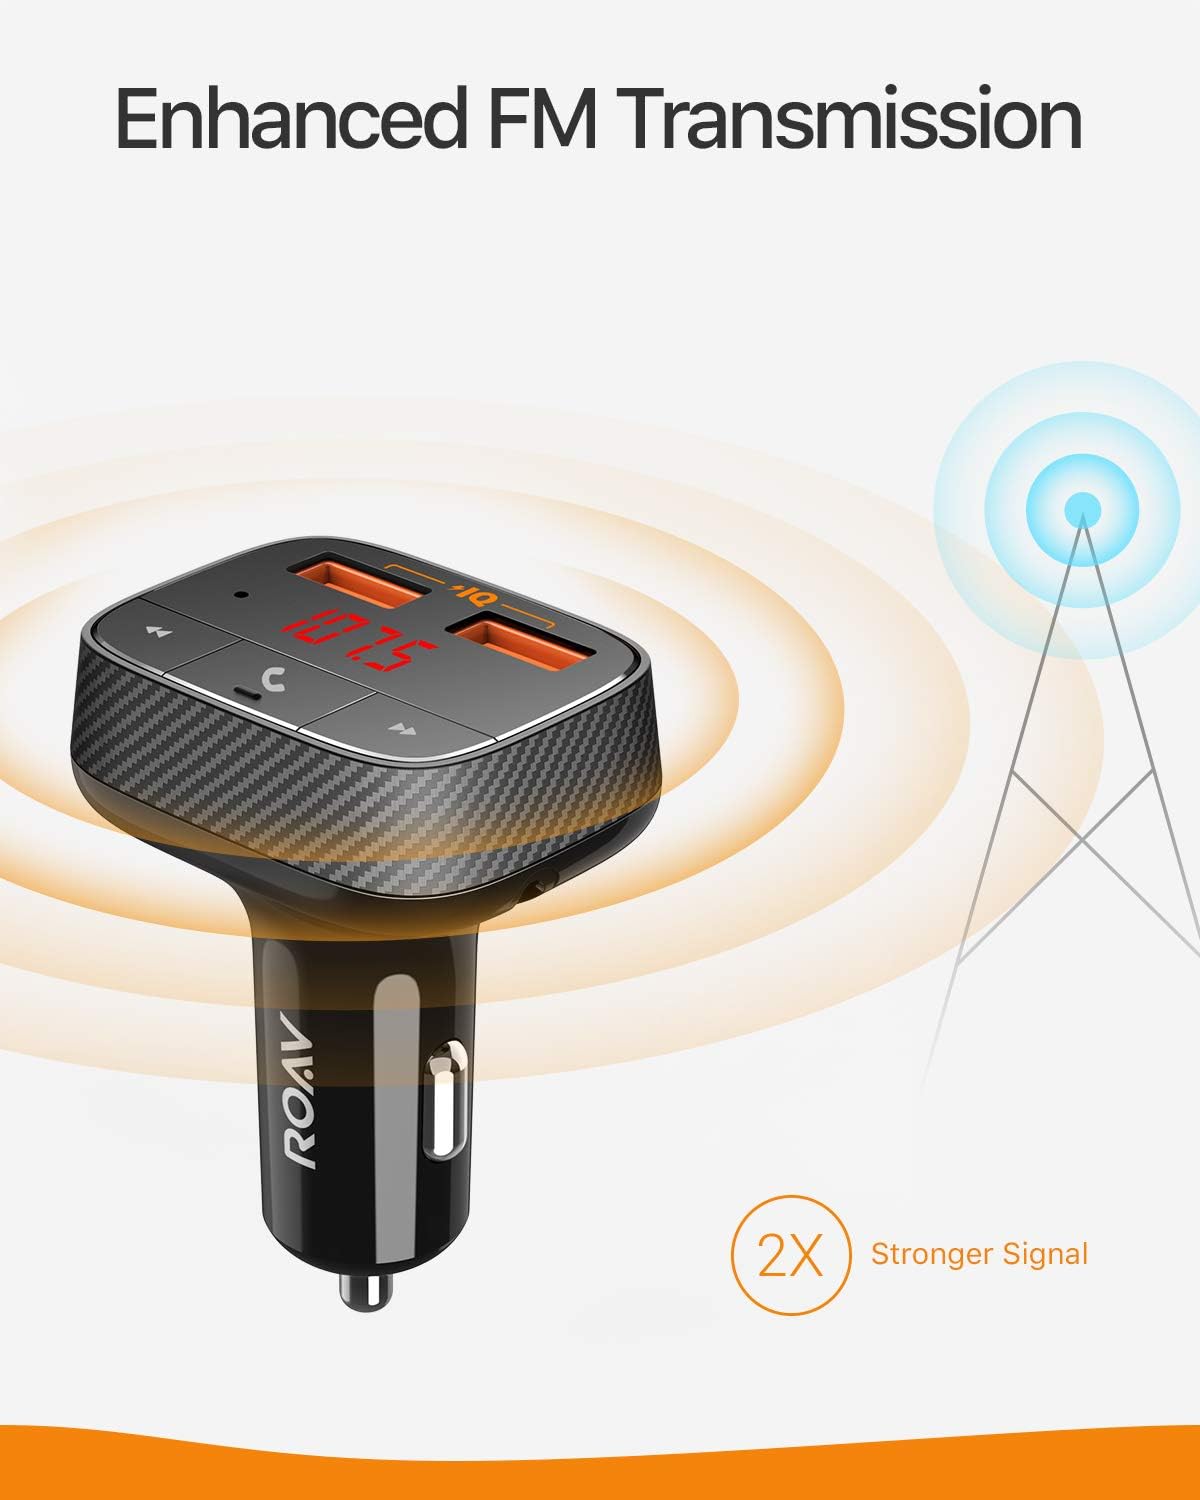 Anker Roav SmartCharge F0 Bluetooth FM Transmitter for Car - Black